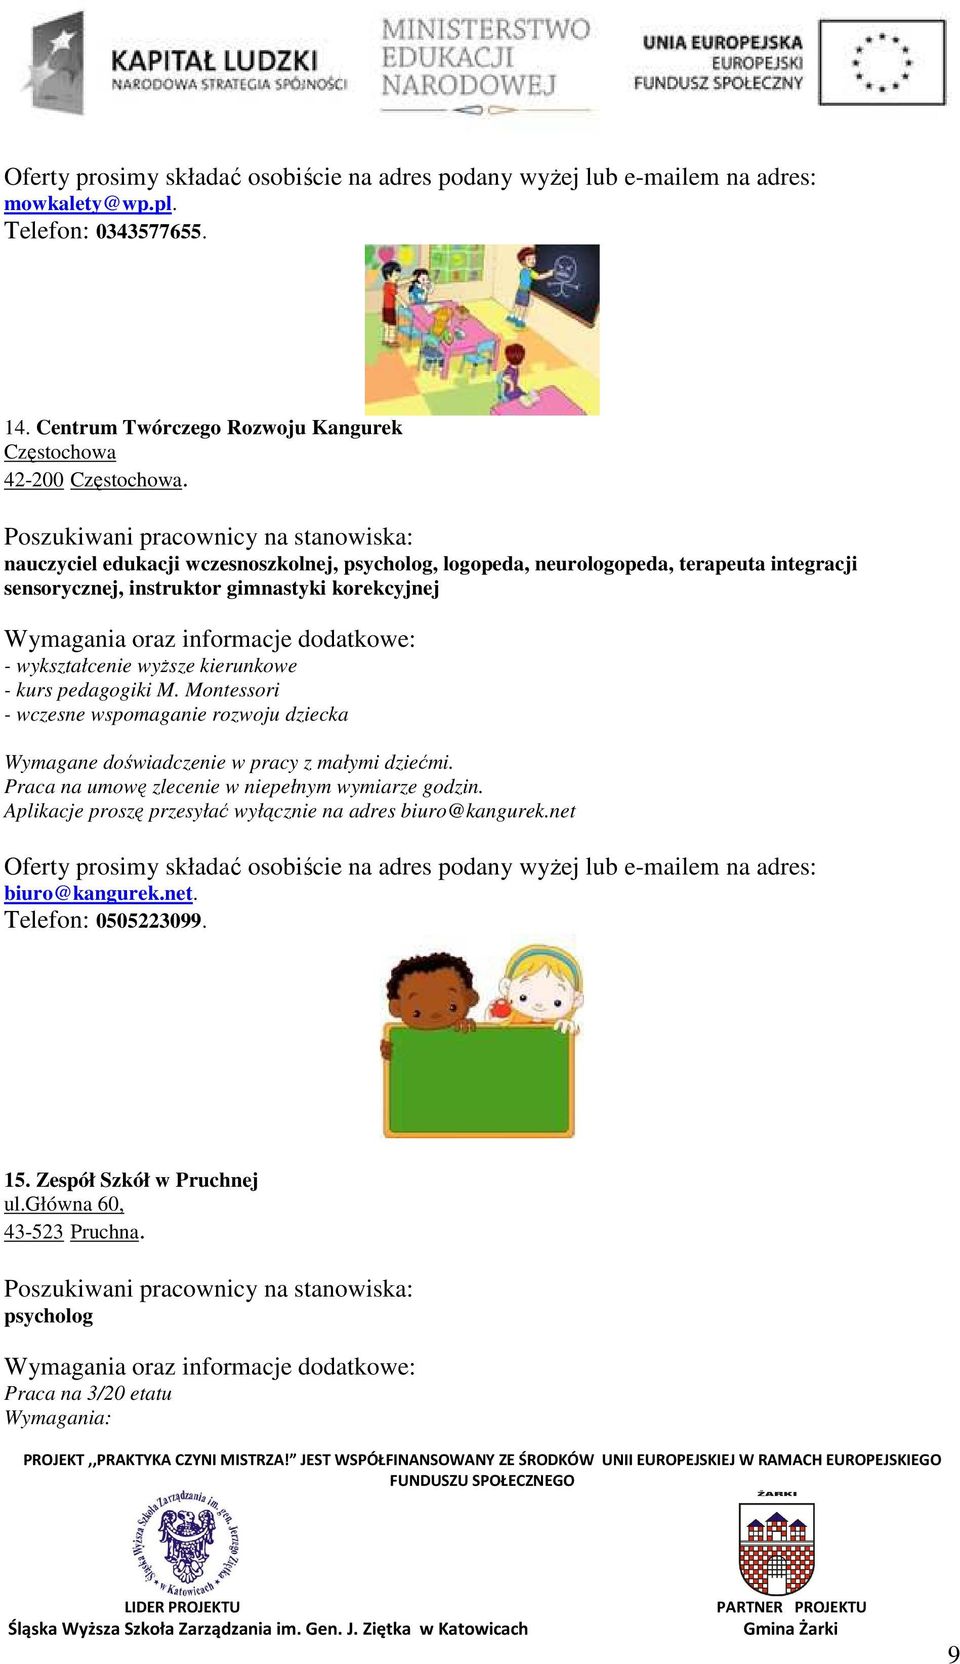 kierunkowe - kurs pedagogiki M. Montessori - wczesne wspomaganie rozwoju dziecka Wymagane doświadczenie w pracy z małymi dziećmi.